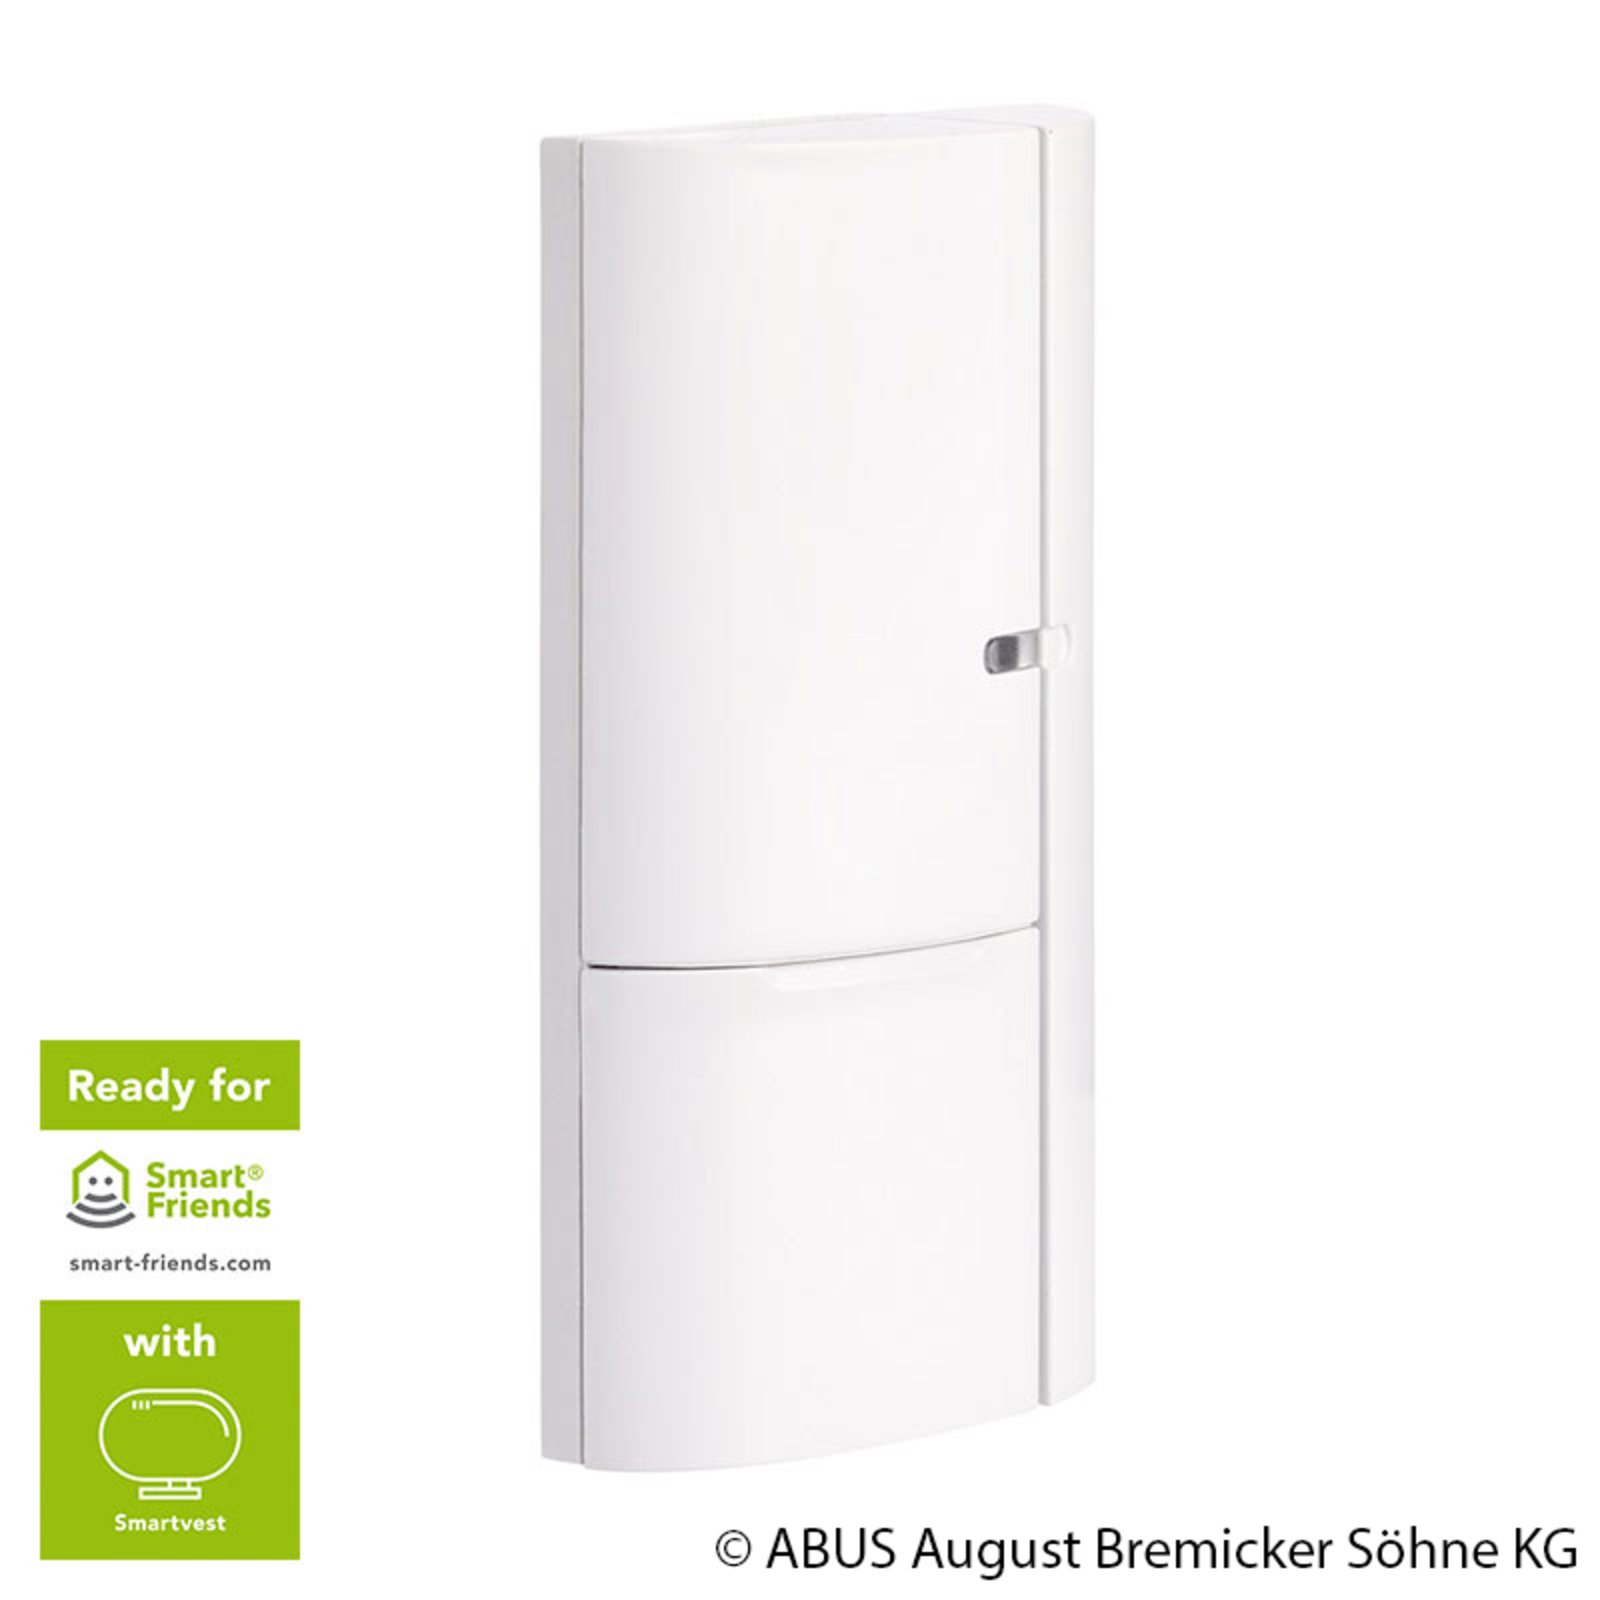 ABUS Smartvest wireless opening detector doors windows